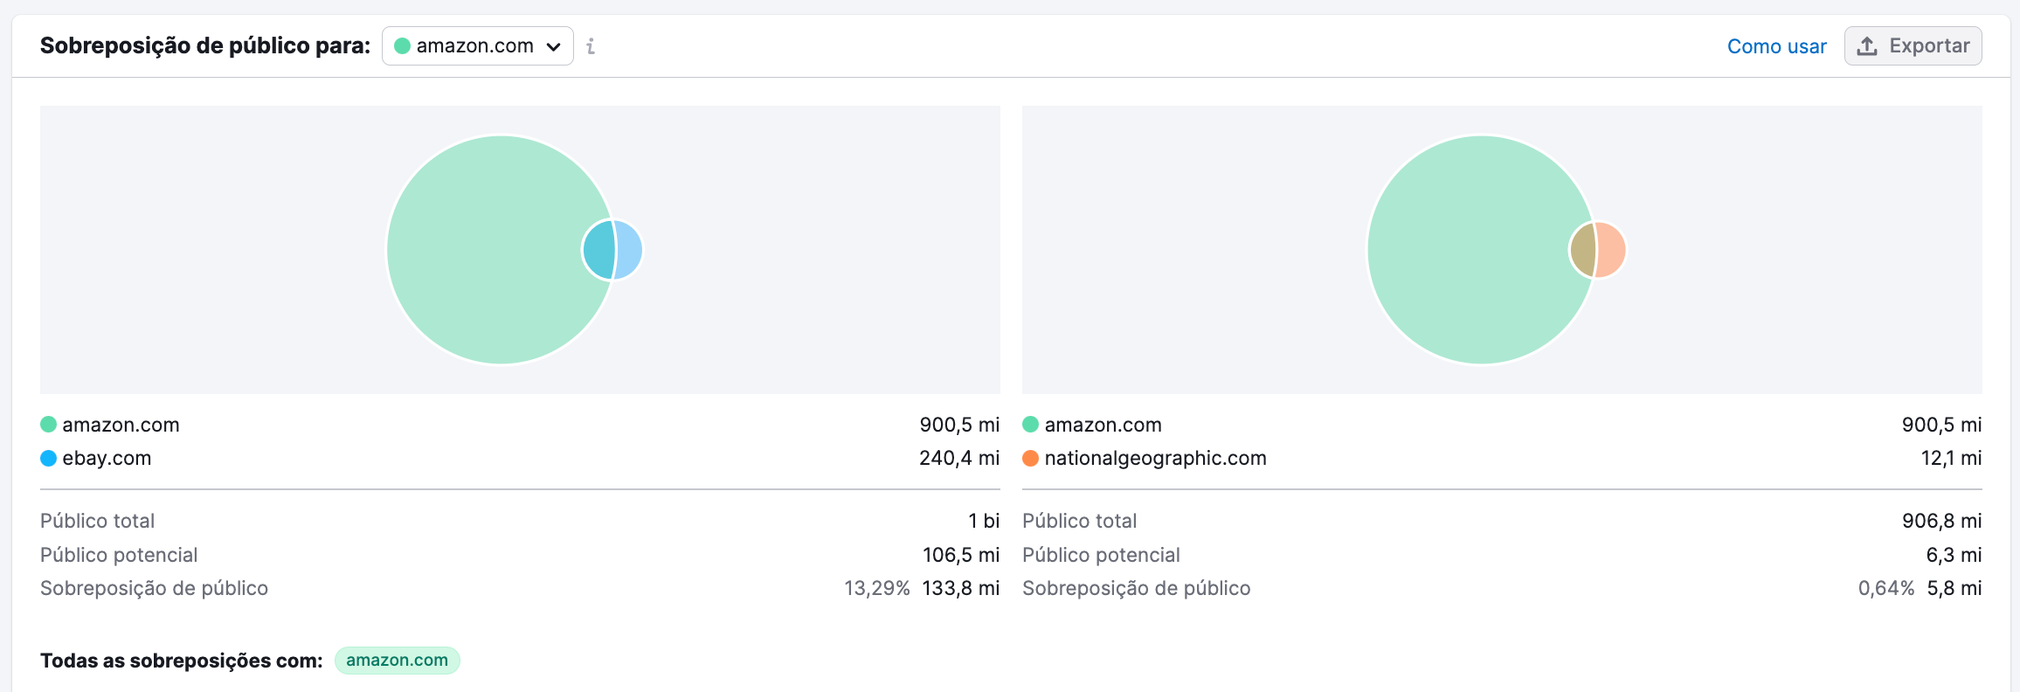 gráfico mostrando sobreposição do público para amazon, natgeo e ebay